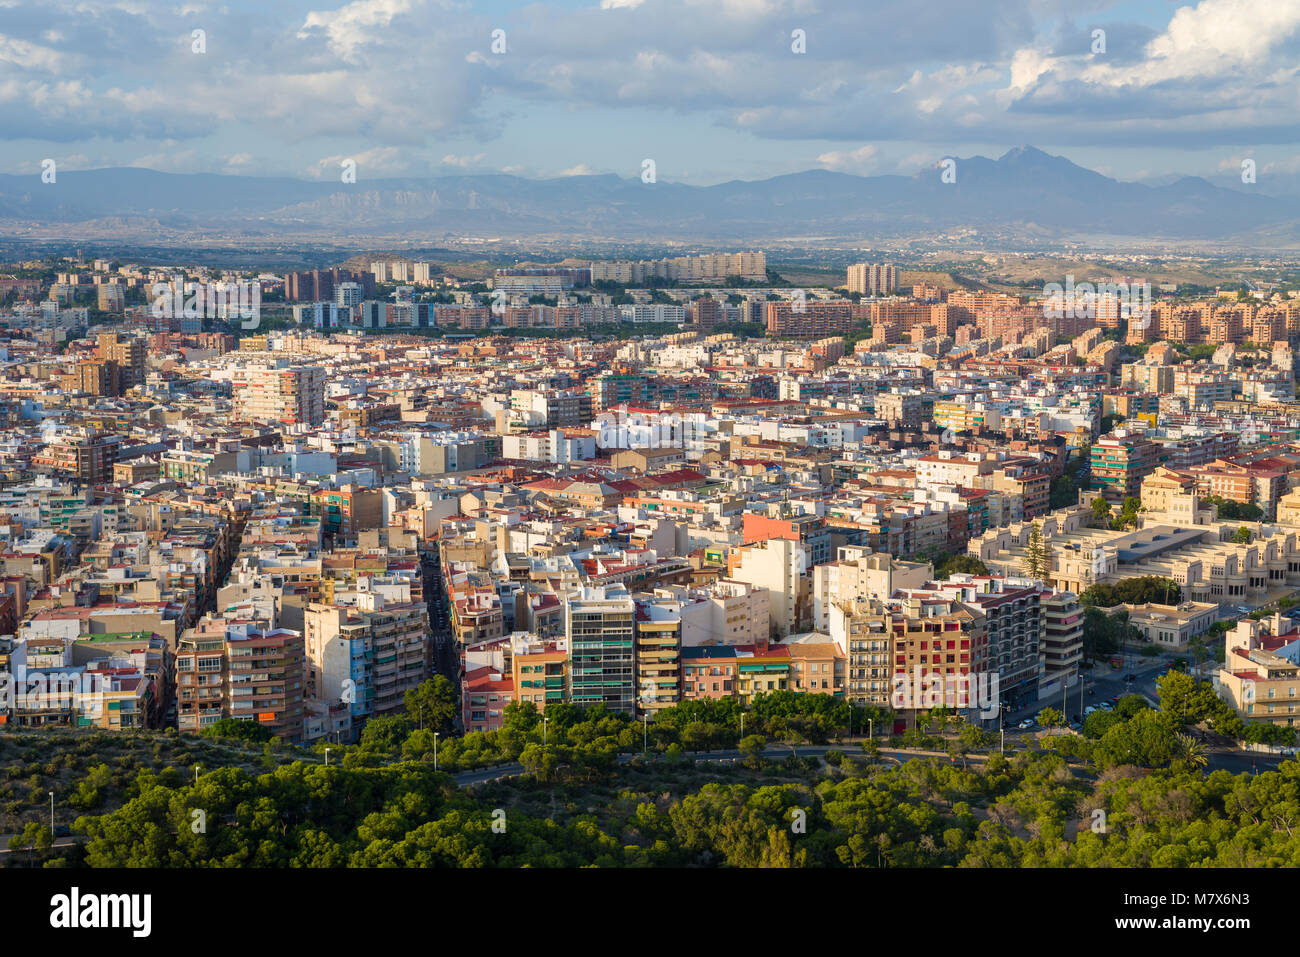 Luftaufnahme über Alicante Stadt von Santa Barbara Burg auf dem Berg Benacantil, Spanien. Stockfoto